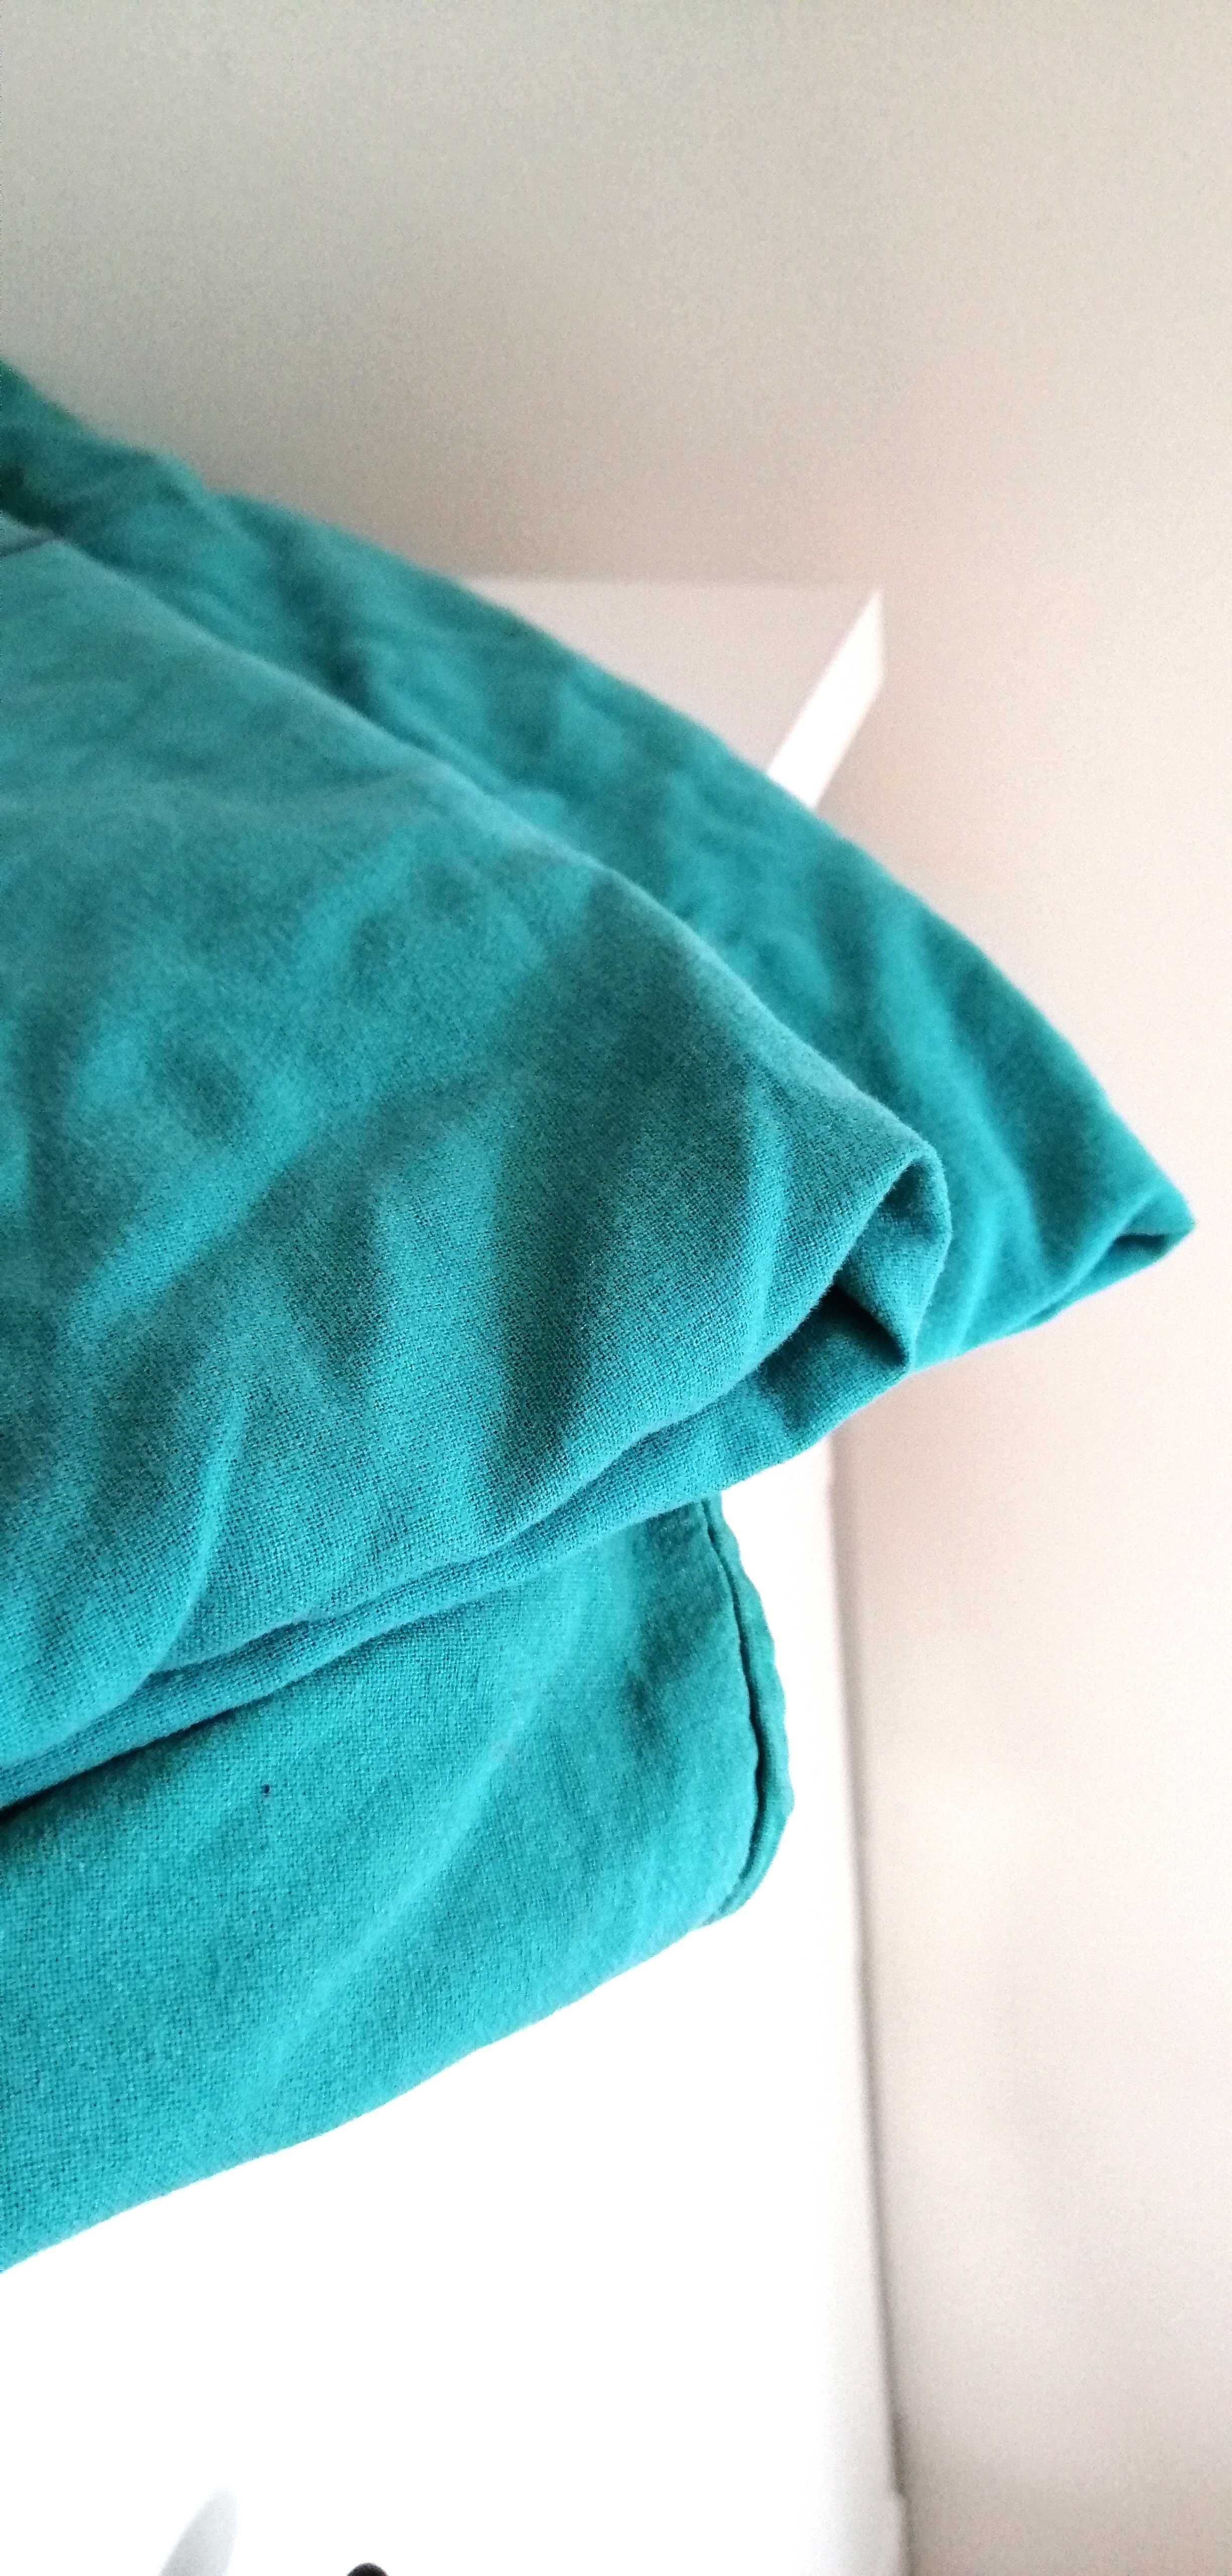 jasnoniebieski miętowy turkusowy materiał pościelowy dresówka tkanina